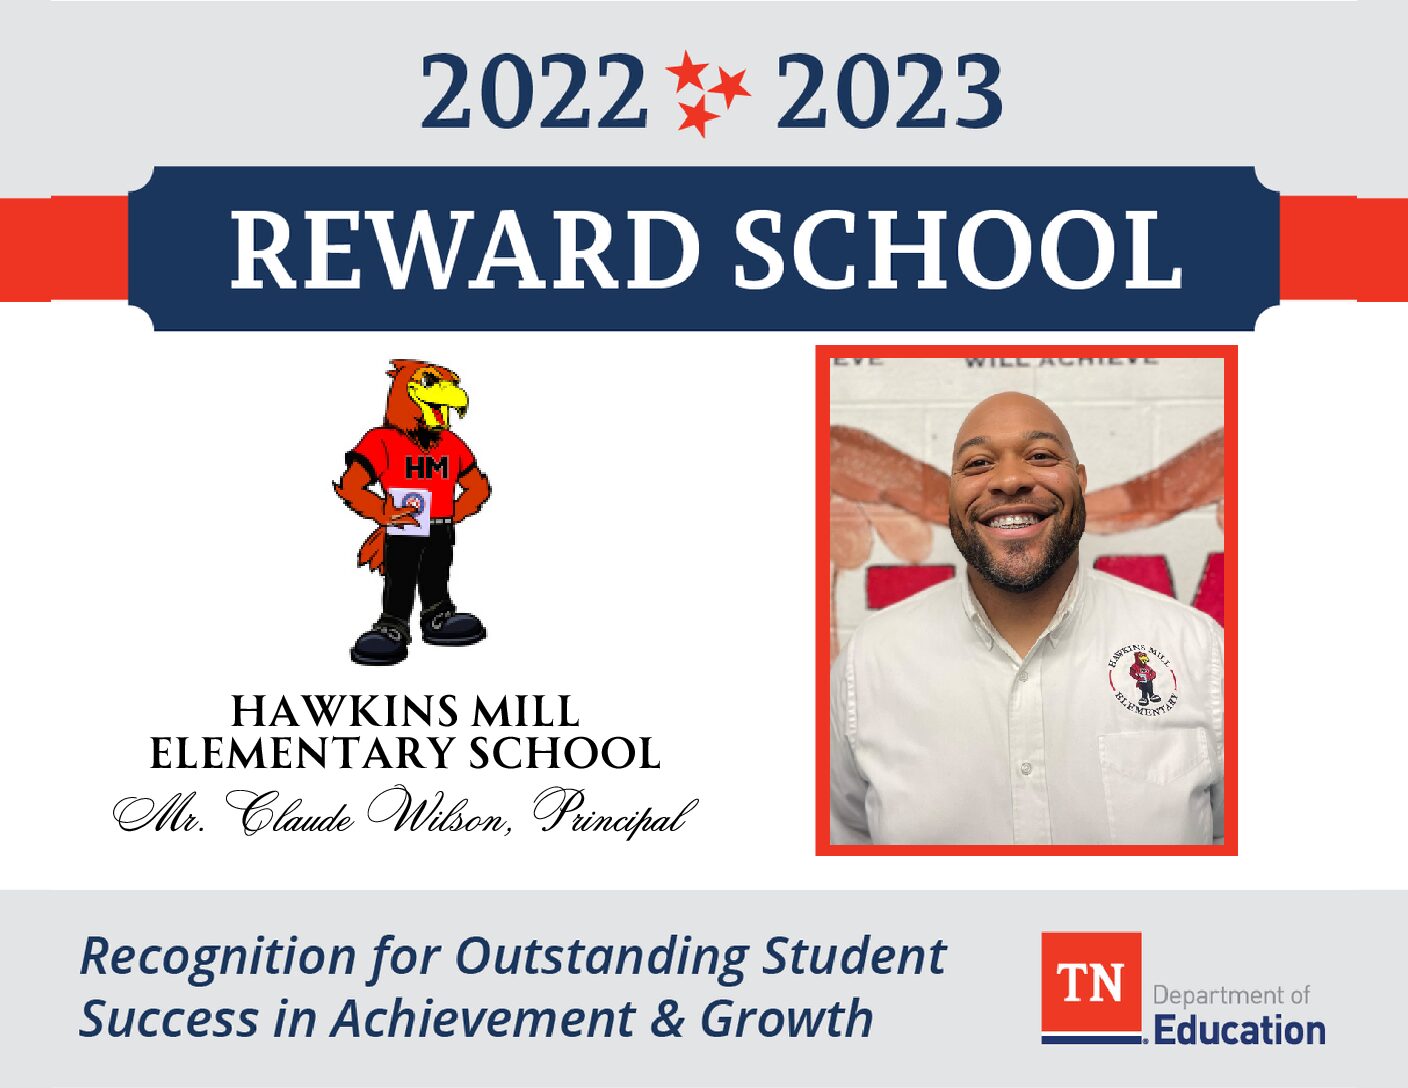 Reward School - Hawkins Mill